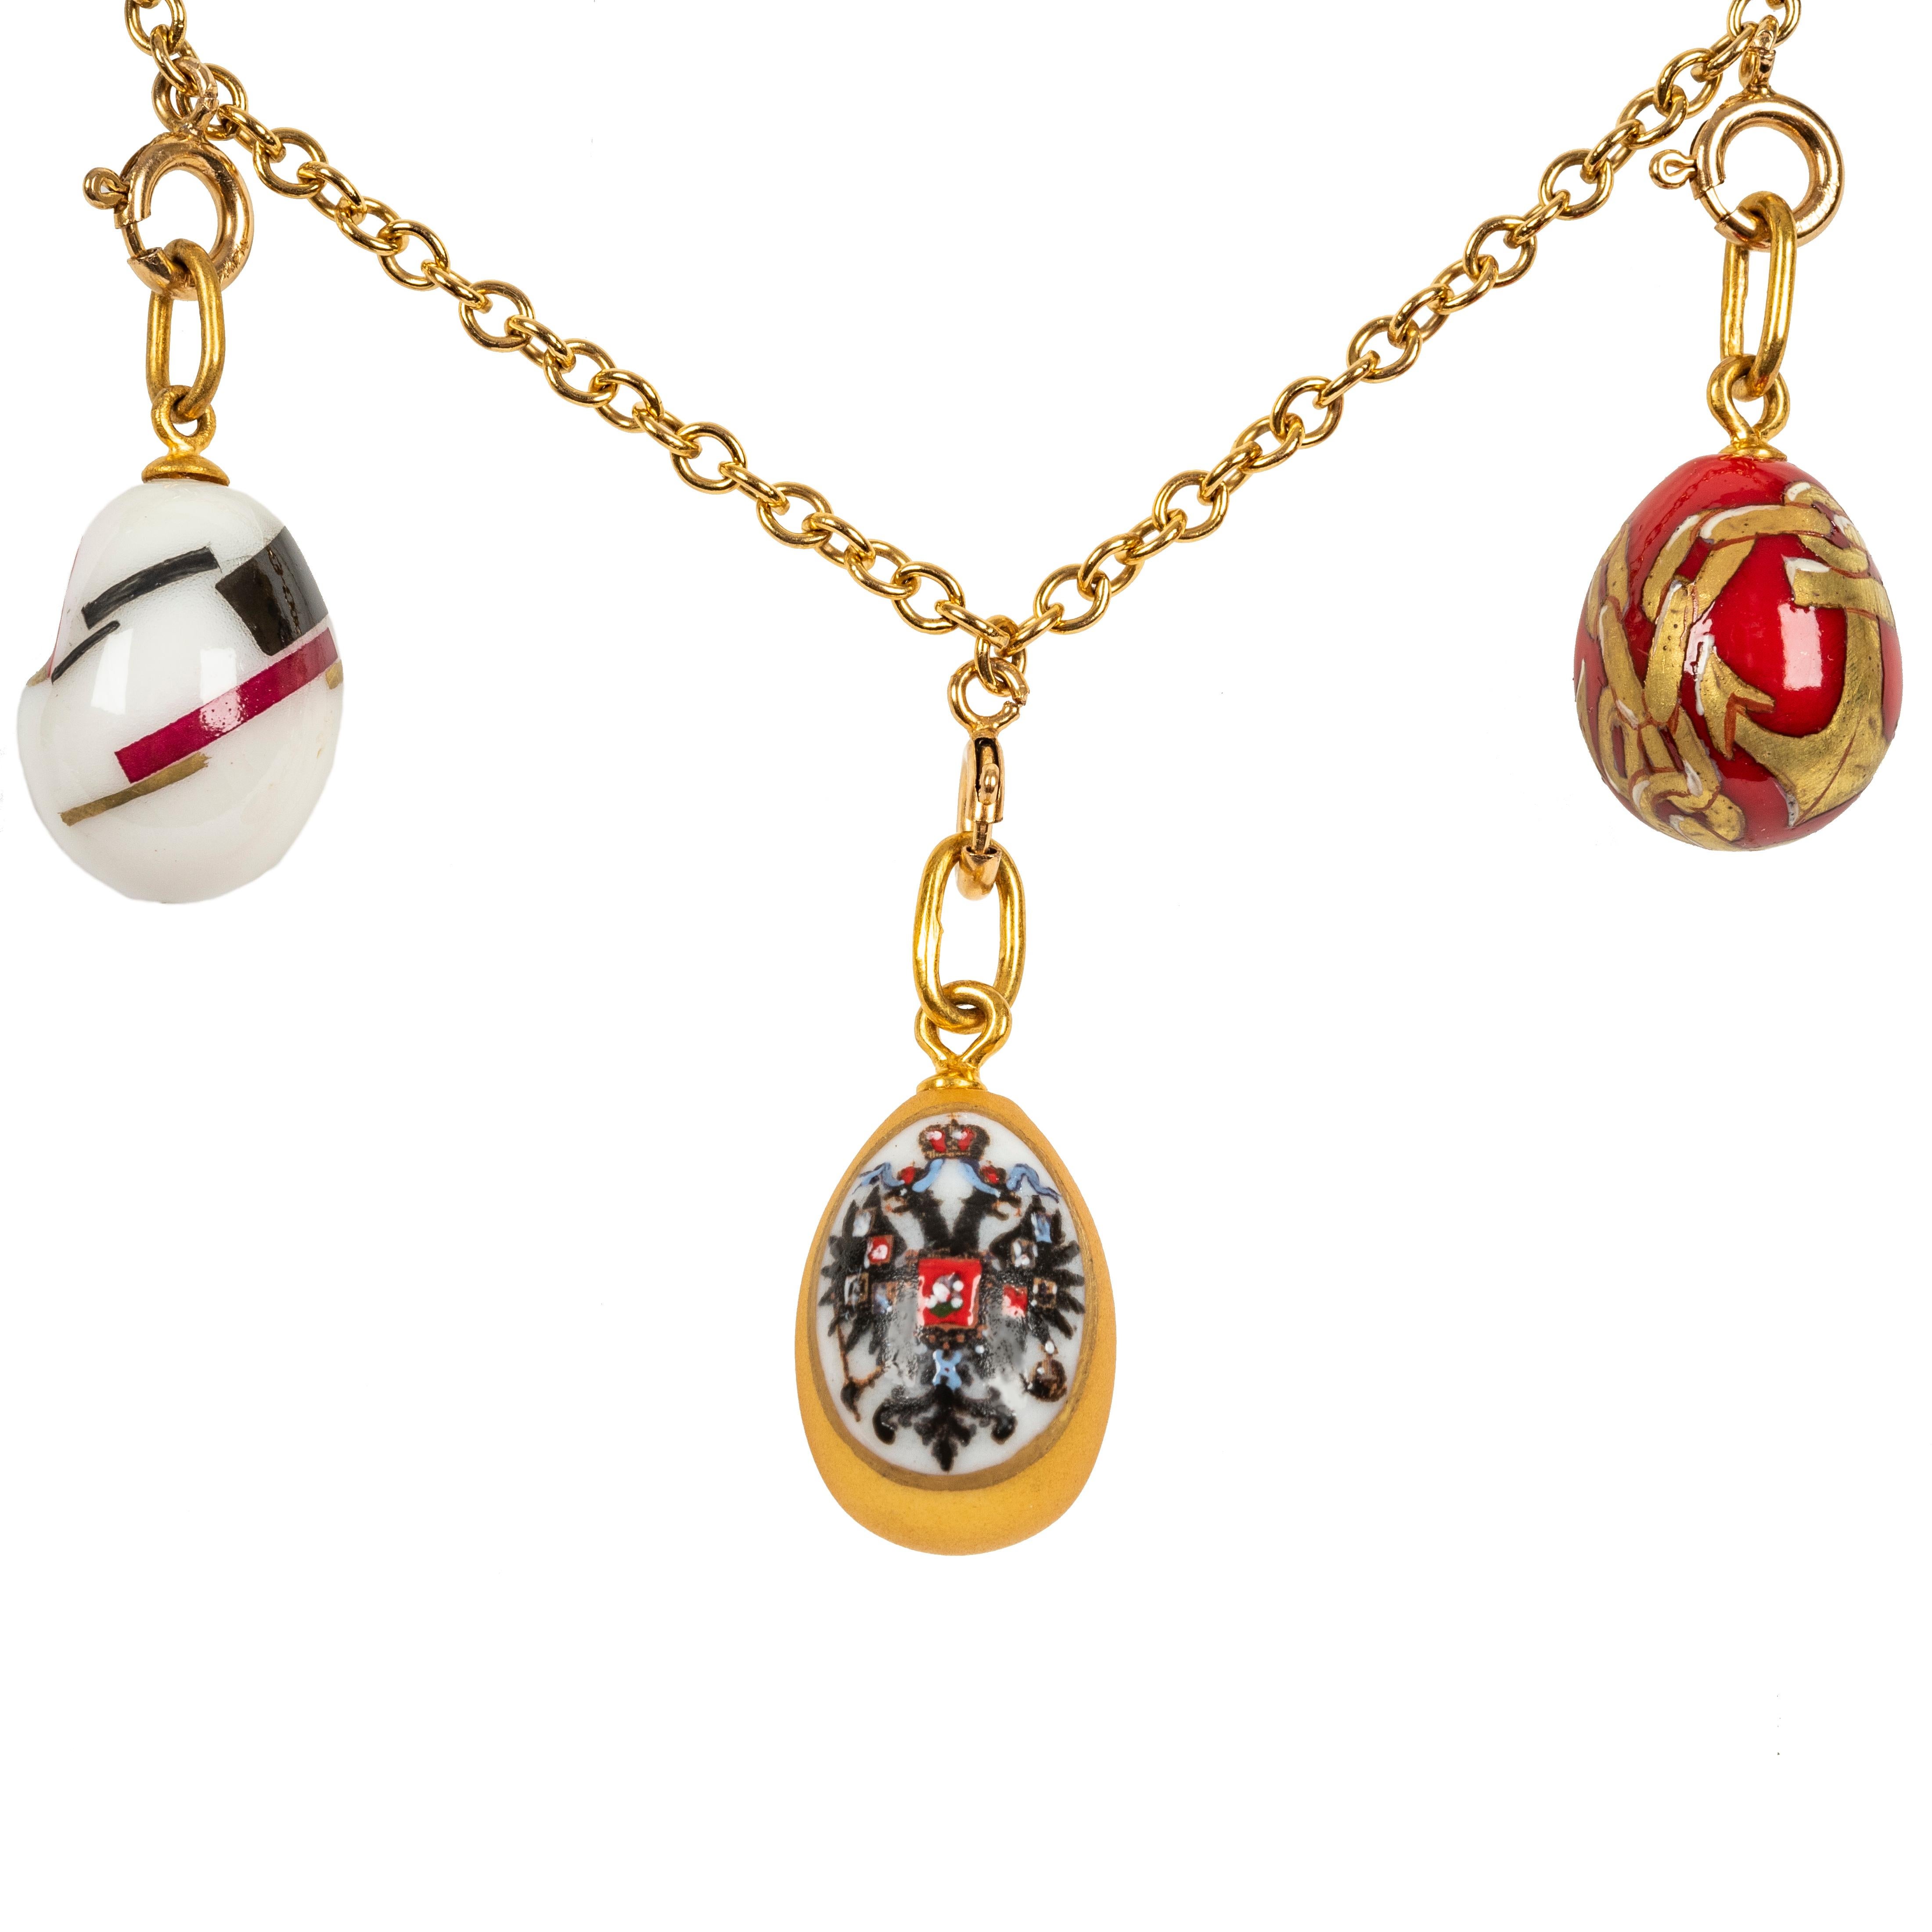 Ce magnifique collier d'oeufs de Pâques est conçu comme une chaîne à maillons classique suspendant neuf pendentifs d'oeufs peints à la main et provenant de Saint-Pétersbourg, en Russie. En porcelaine colorée représentant un aigle bicéphale des